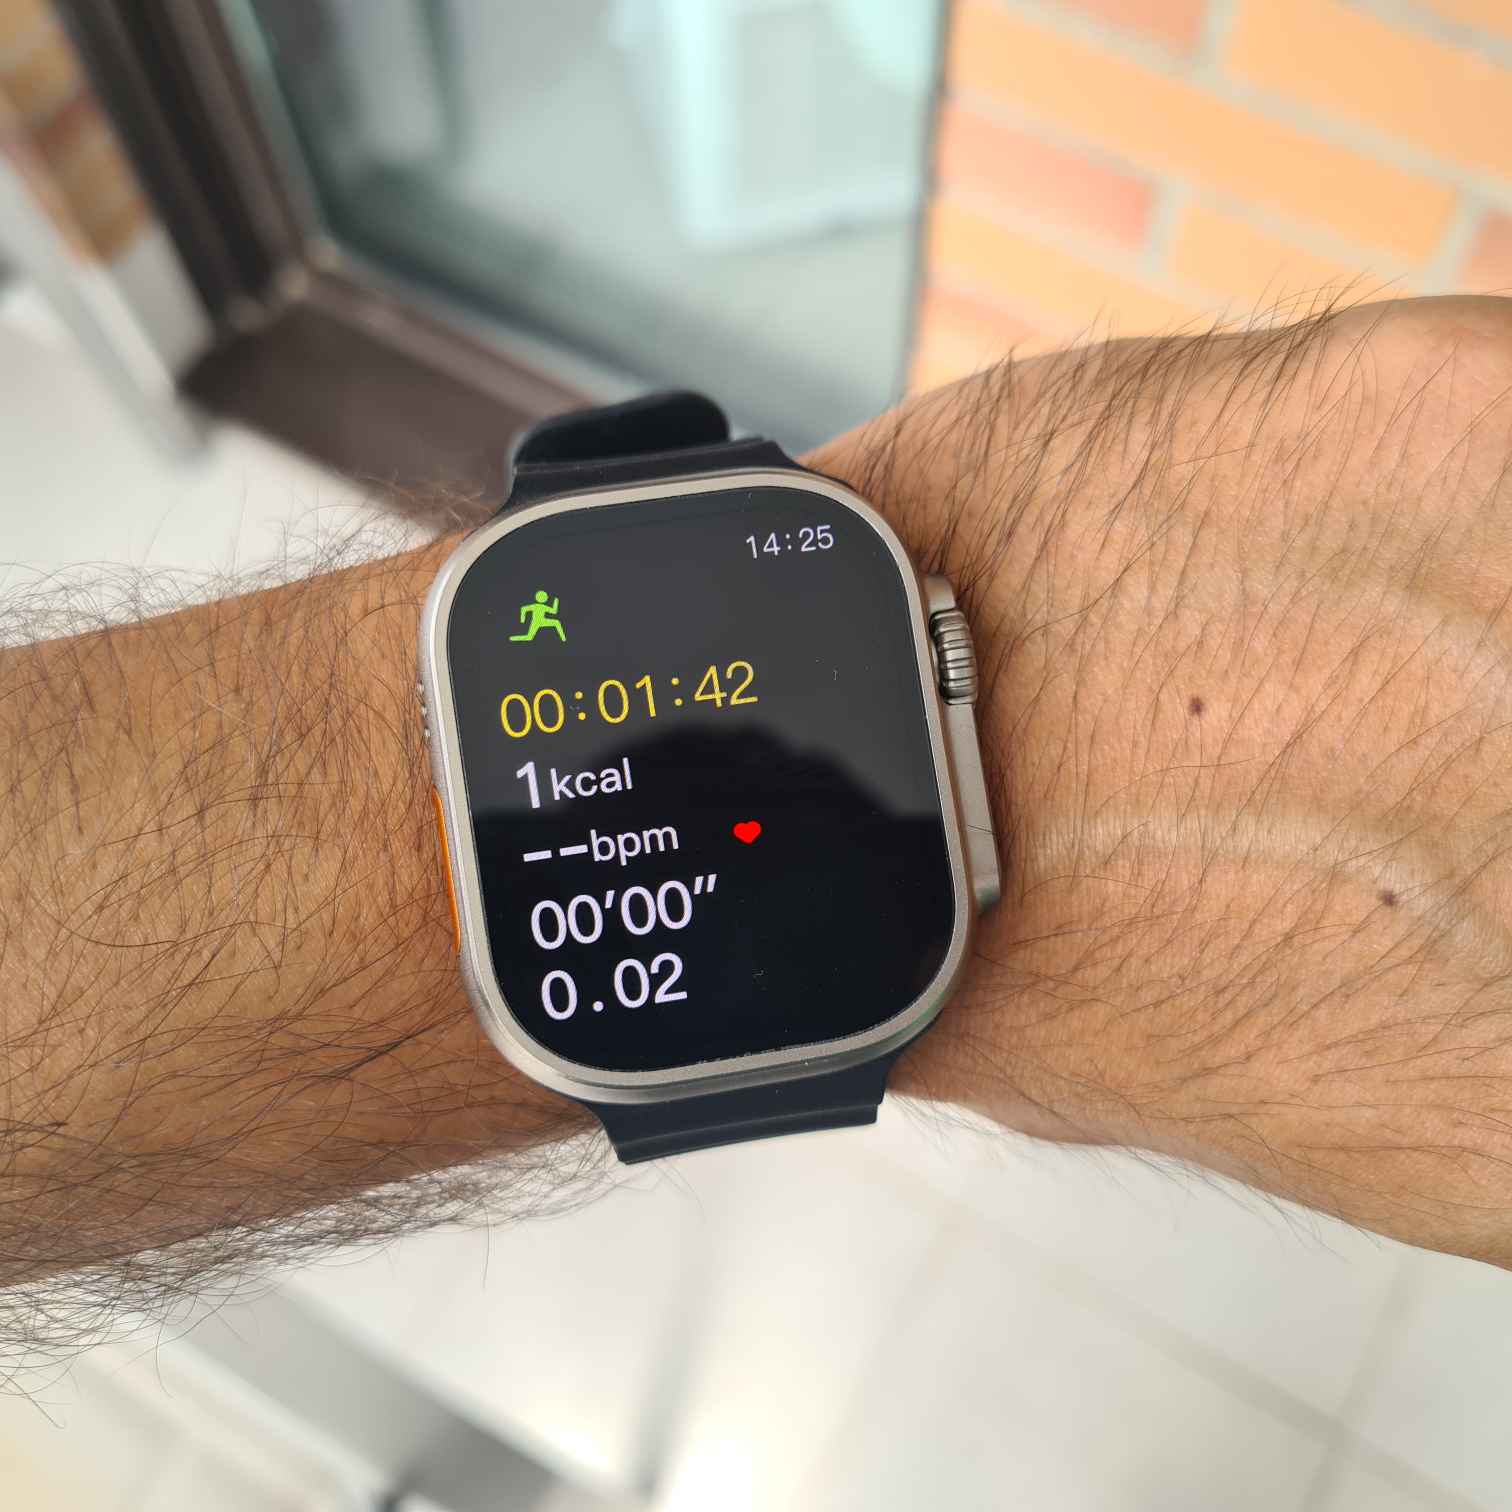 Hello Watch 3 Plus con pantalla AMOLED 4 GB de 2,04 pulgadas, Smartwatch  para hombres y mujeres compatible con Android e IOS IP68 color negro